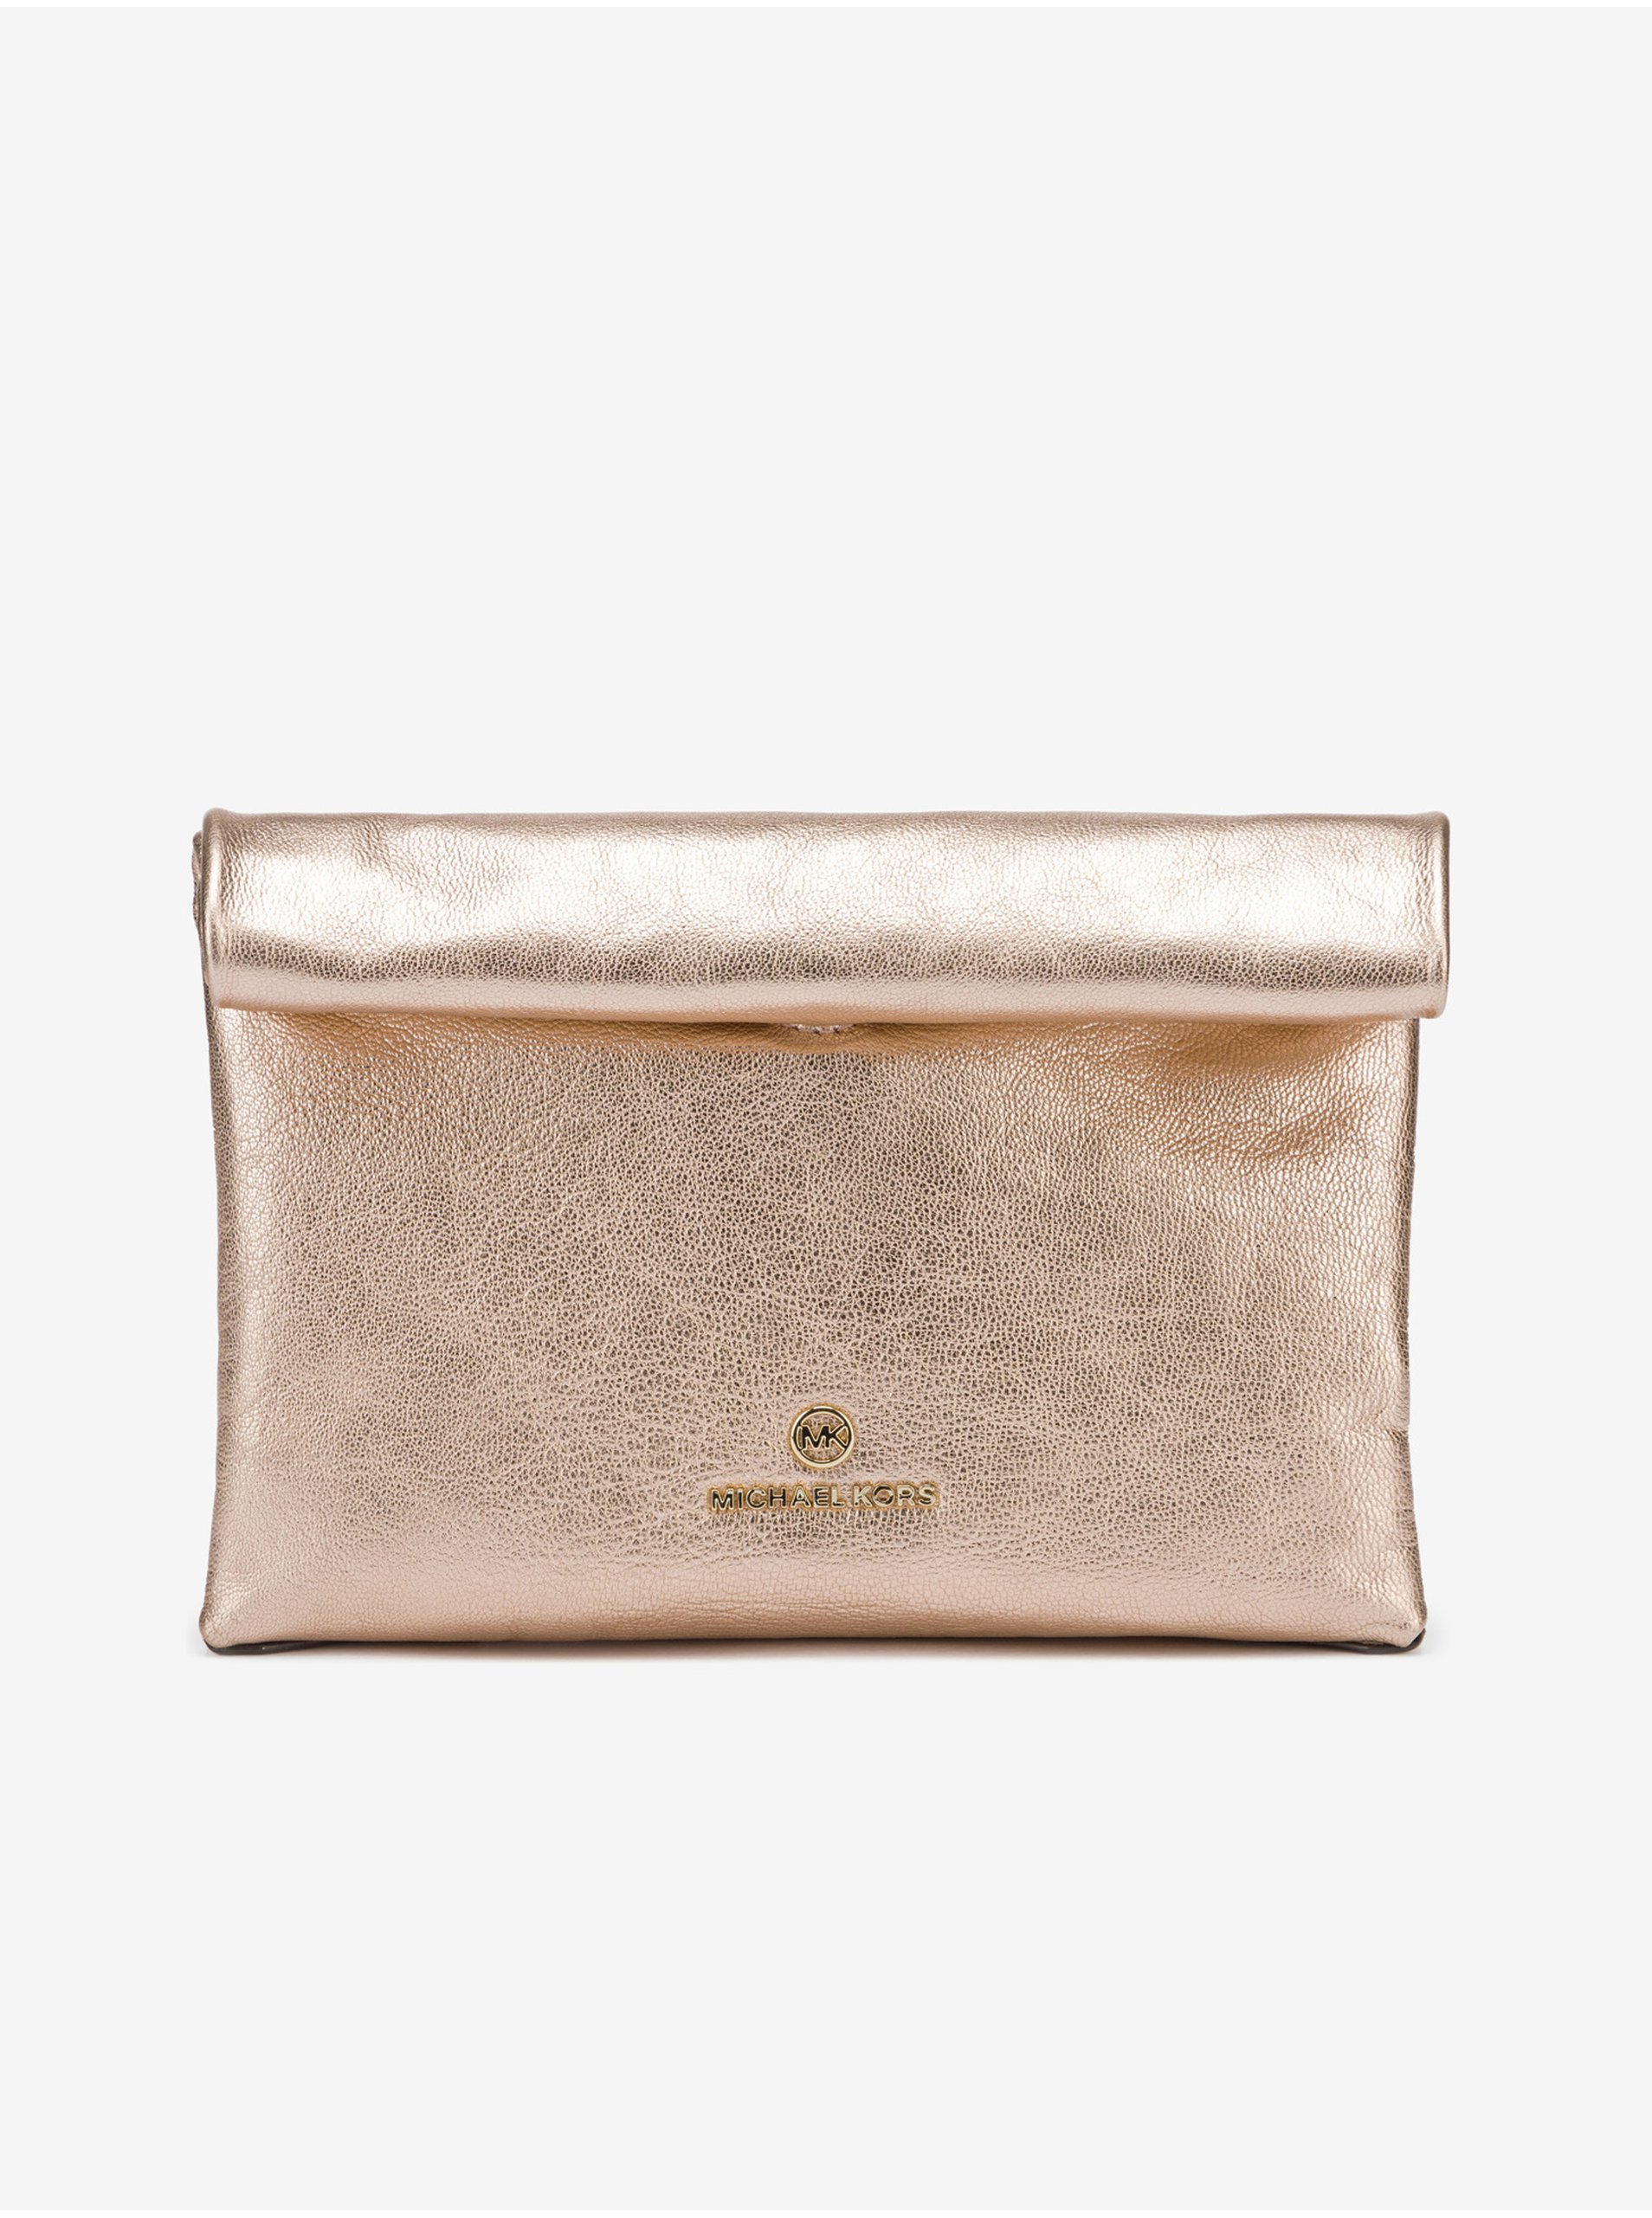 E-shop Dámska kožená kabelka v zlatej farbe Michael Kors Lunch